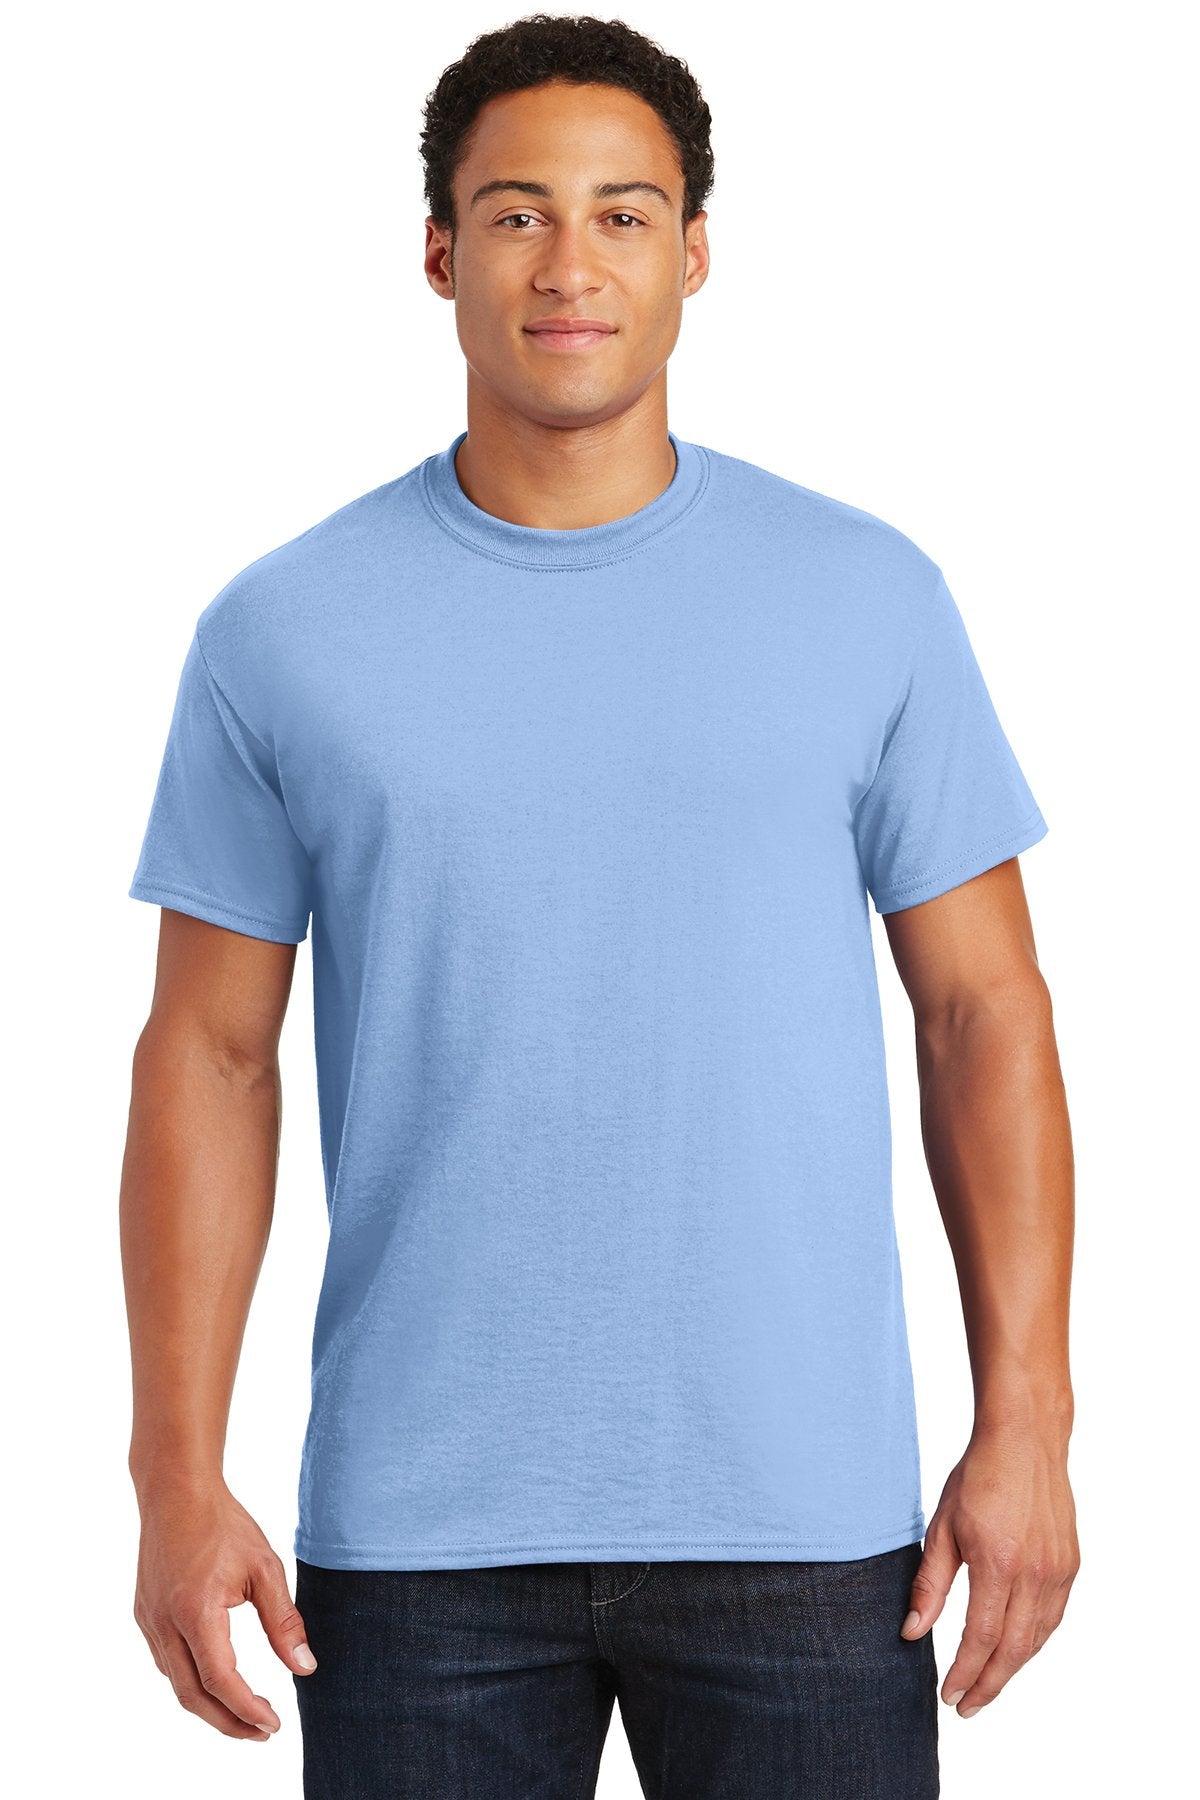 gildan dryblend cotton poly t shirt 8000 light blue